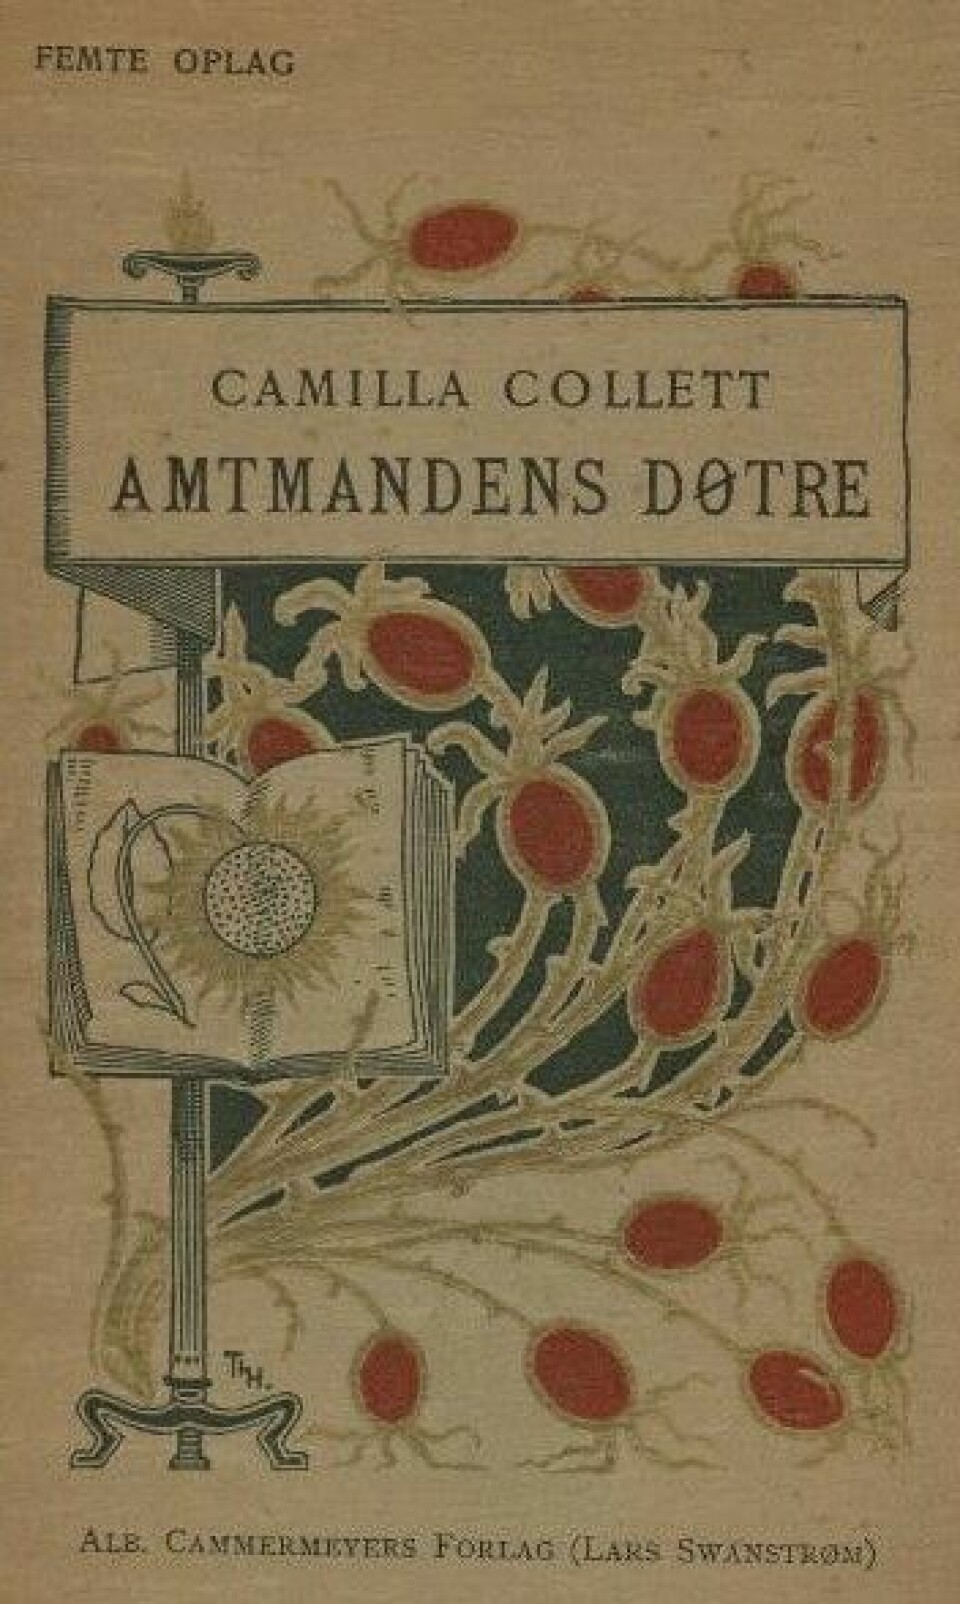 Amtmandens Døtre (Originaltittel: Amtmandens Døttre) er Camilla Colletts mest kjente roman. Første del ble gitt ut i 1854 og andre del i 1855.